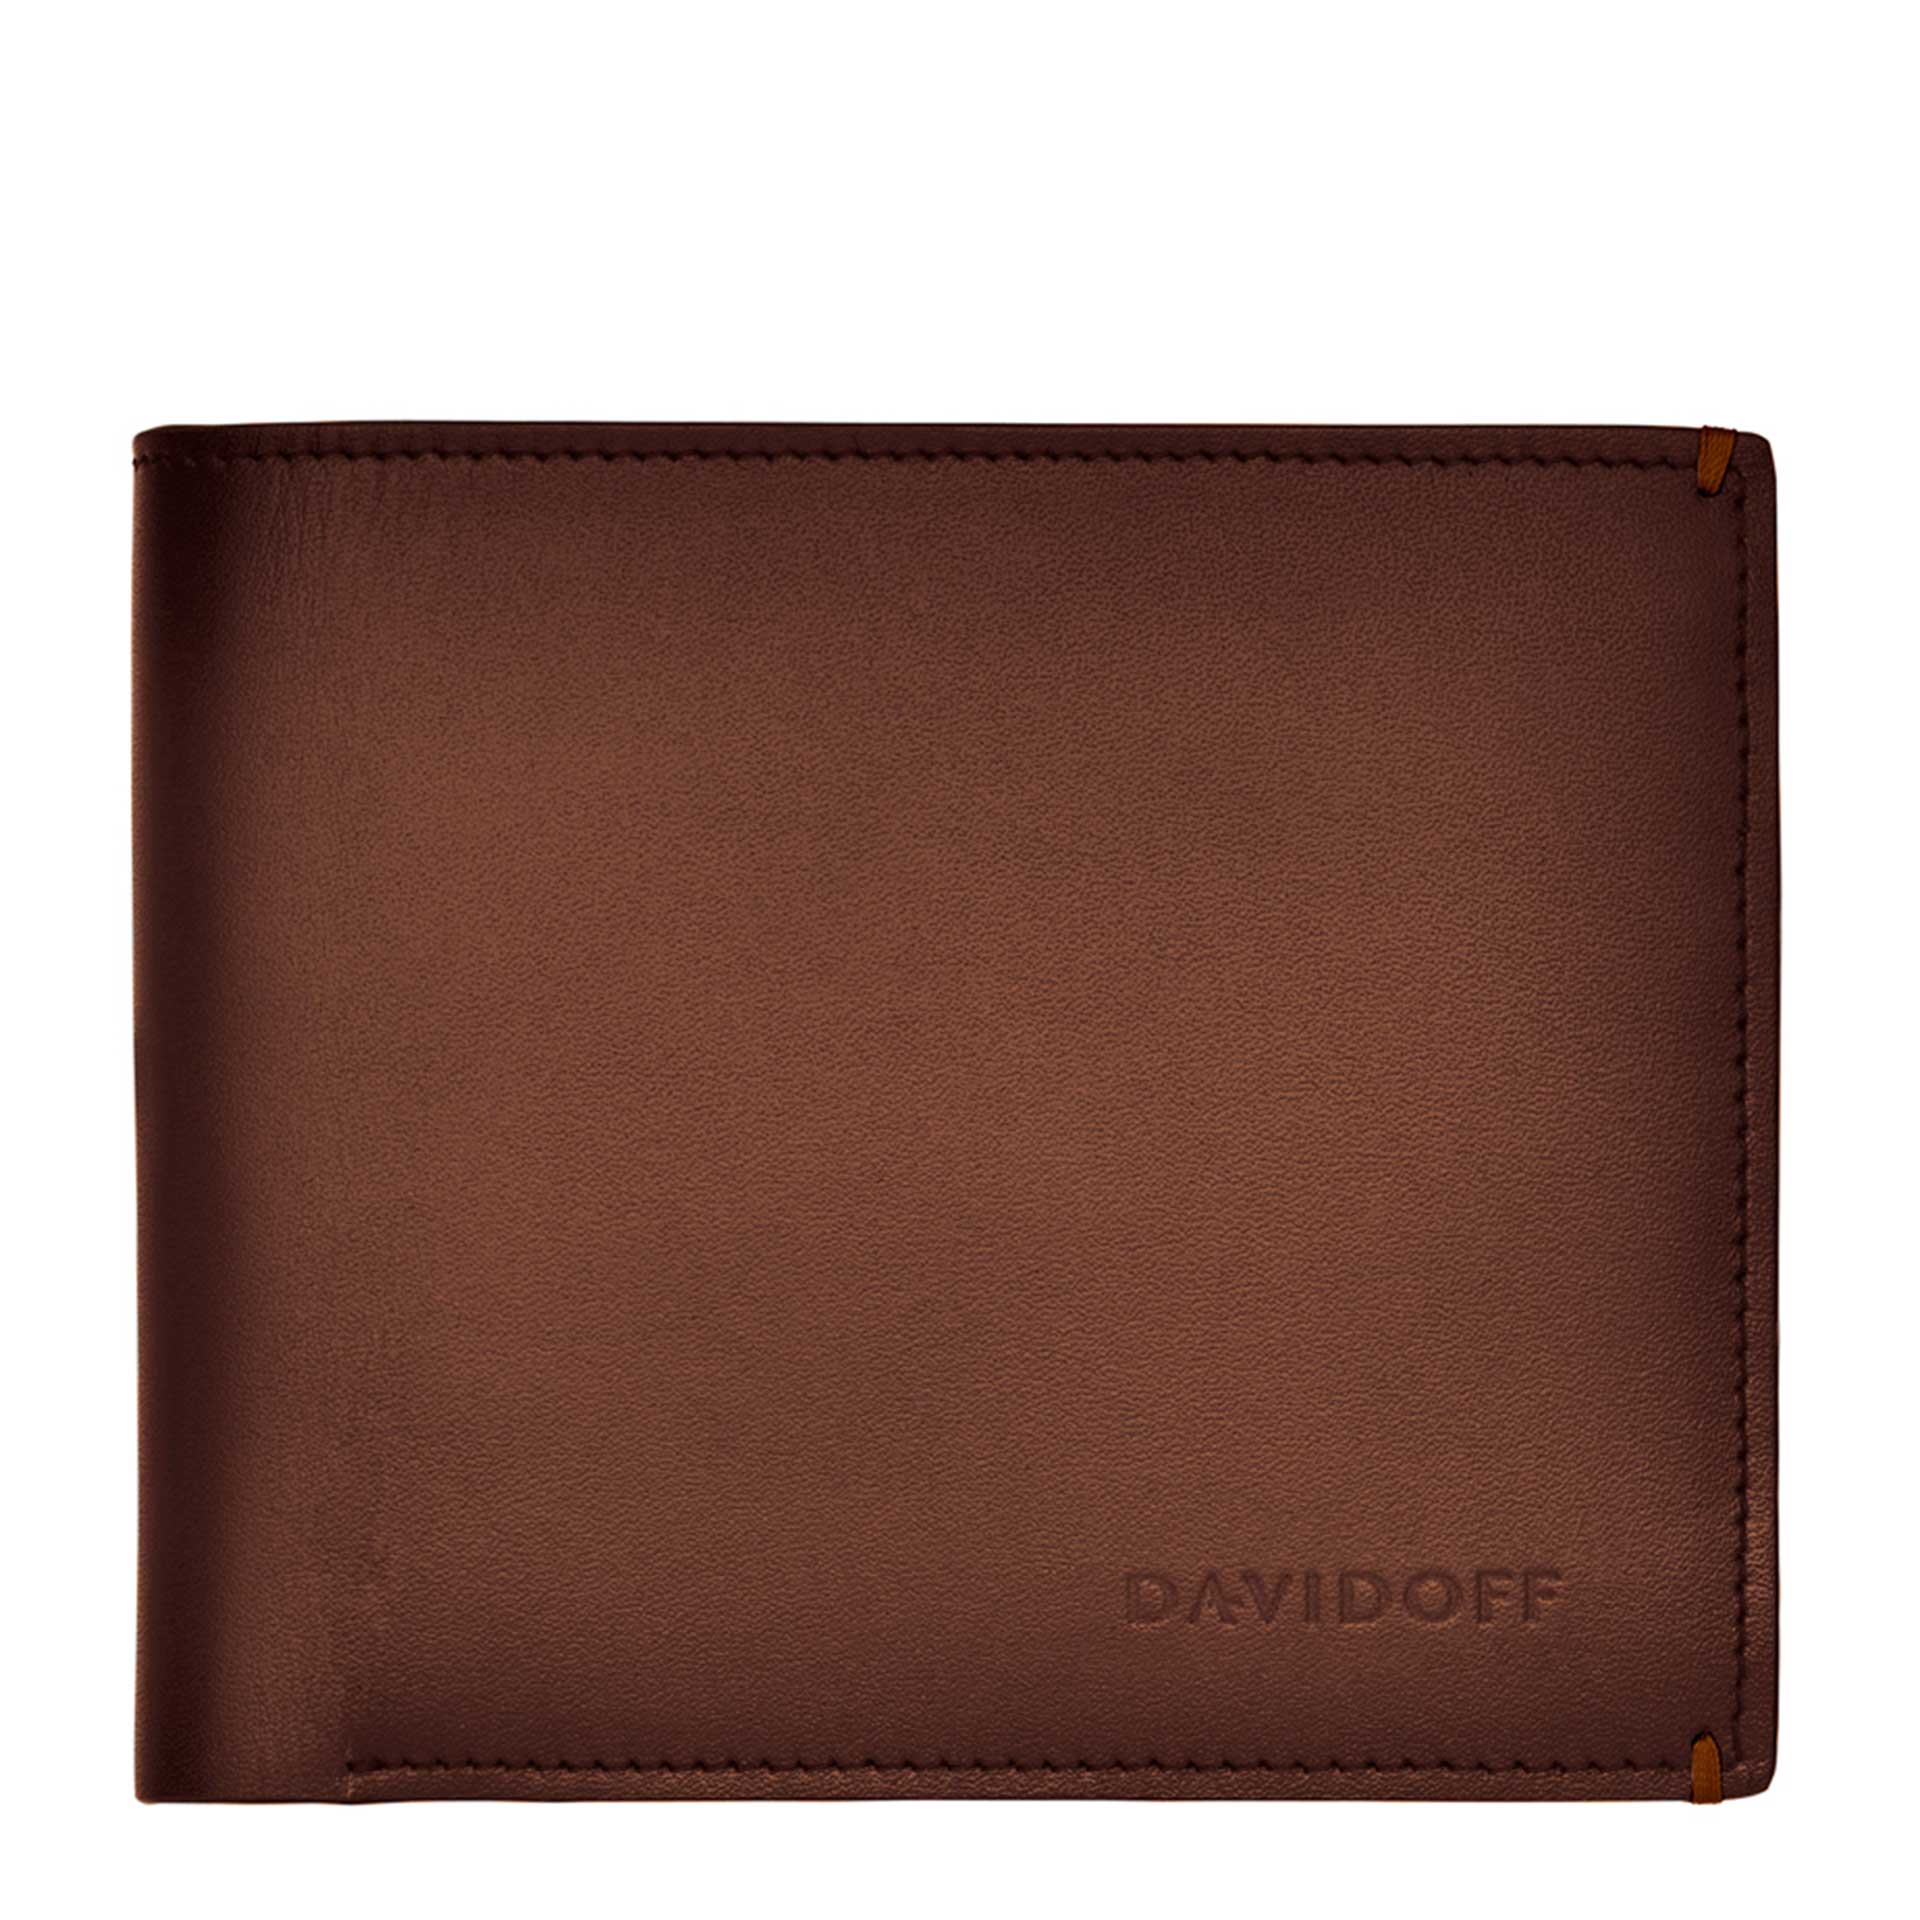 DAVIDOFF VENICE Herrengeldbörse mit Münzfach brown